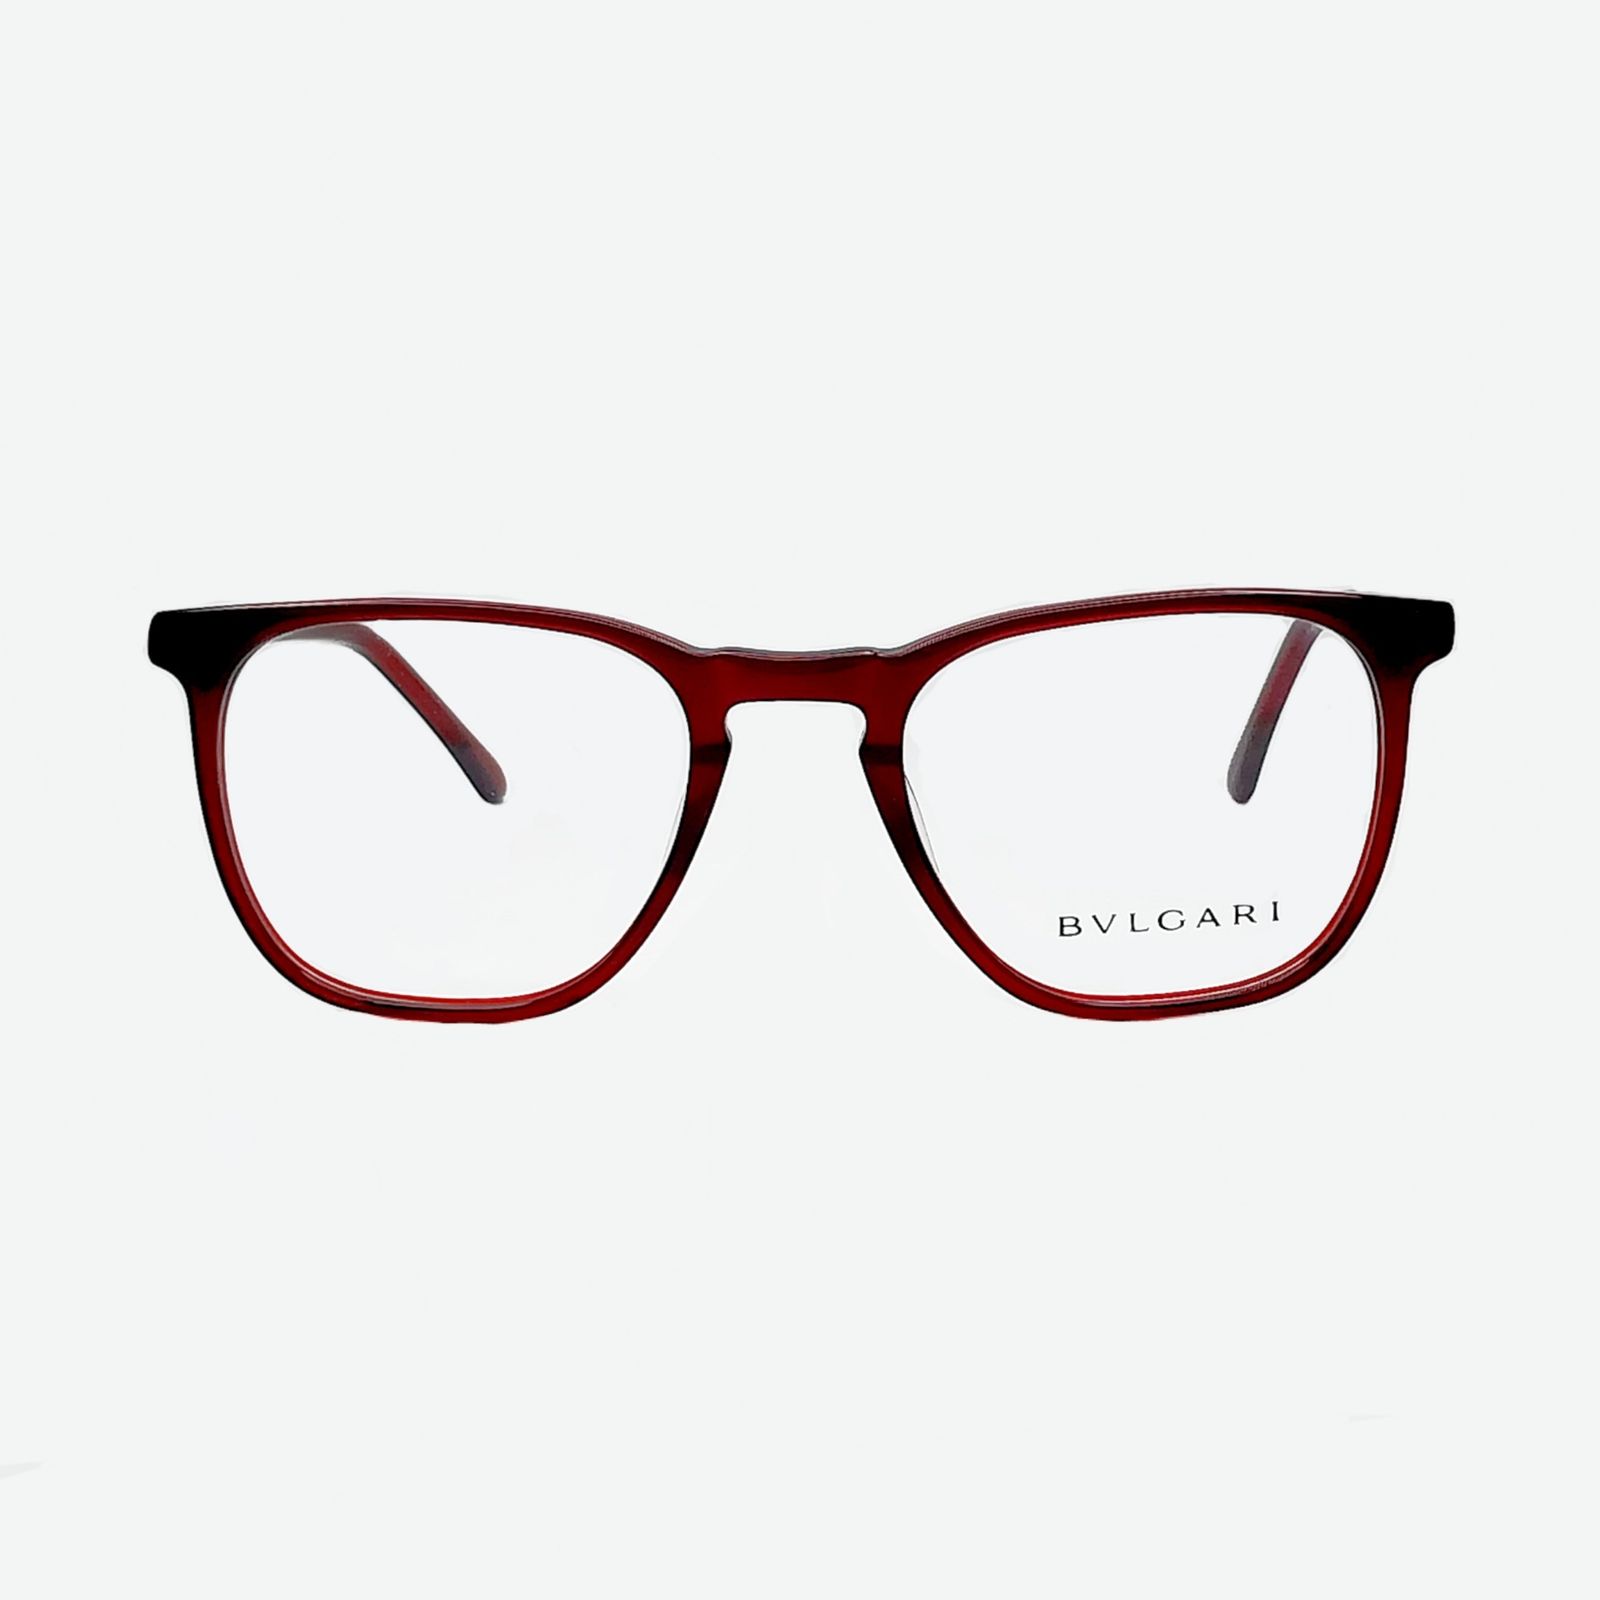 فریم عینک طبی بولگاری مدل F63638 -  - 1